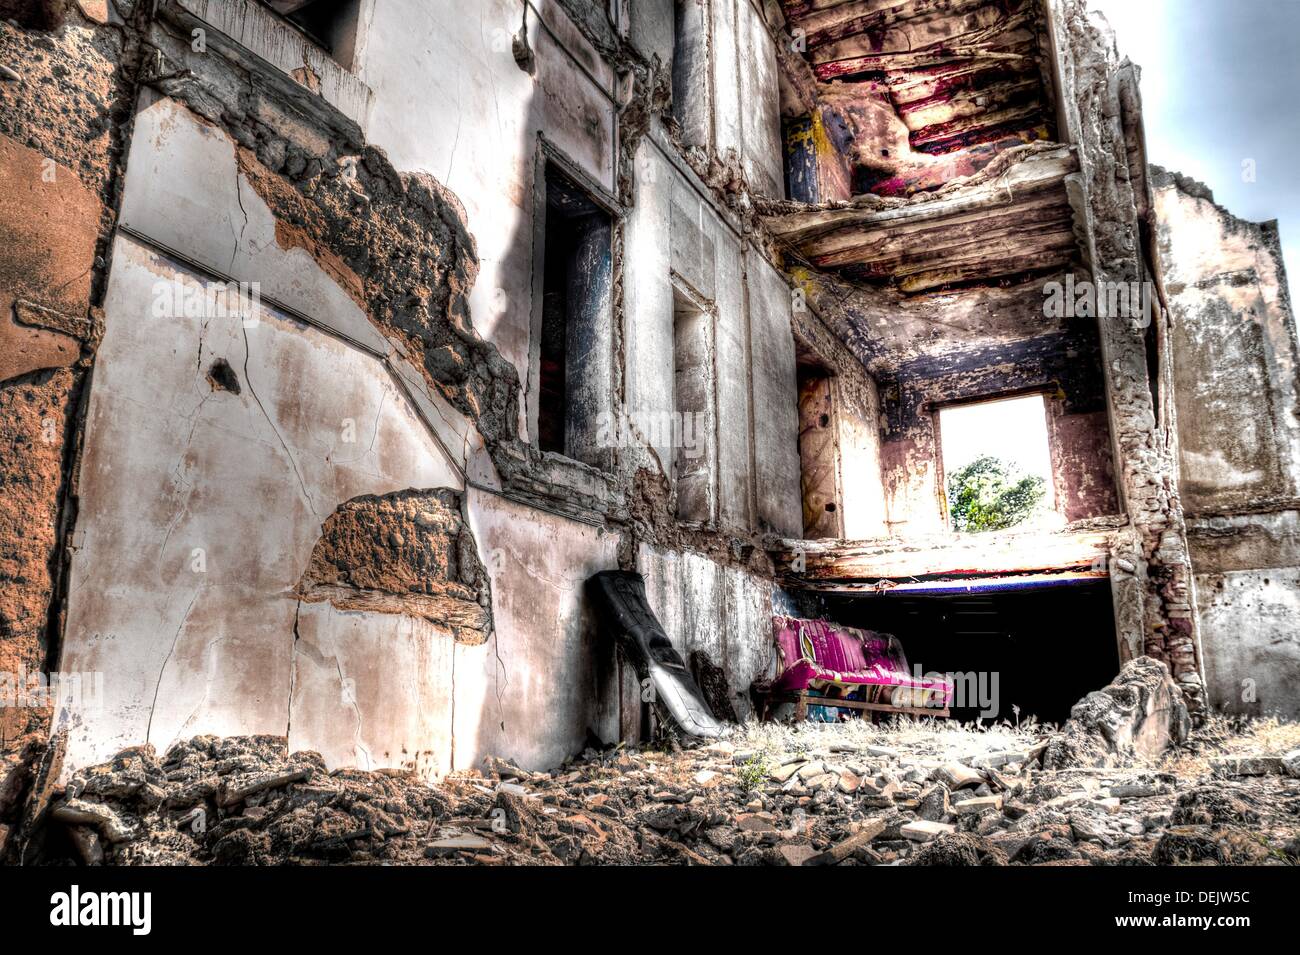 Ciudad de Belchite, Belchite, antiguas ruinas de la ciudad fueron destruidos durante la guerra civil, Aragón, provincia de Zaragoza, España, Europa Foto de stock